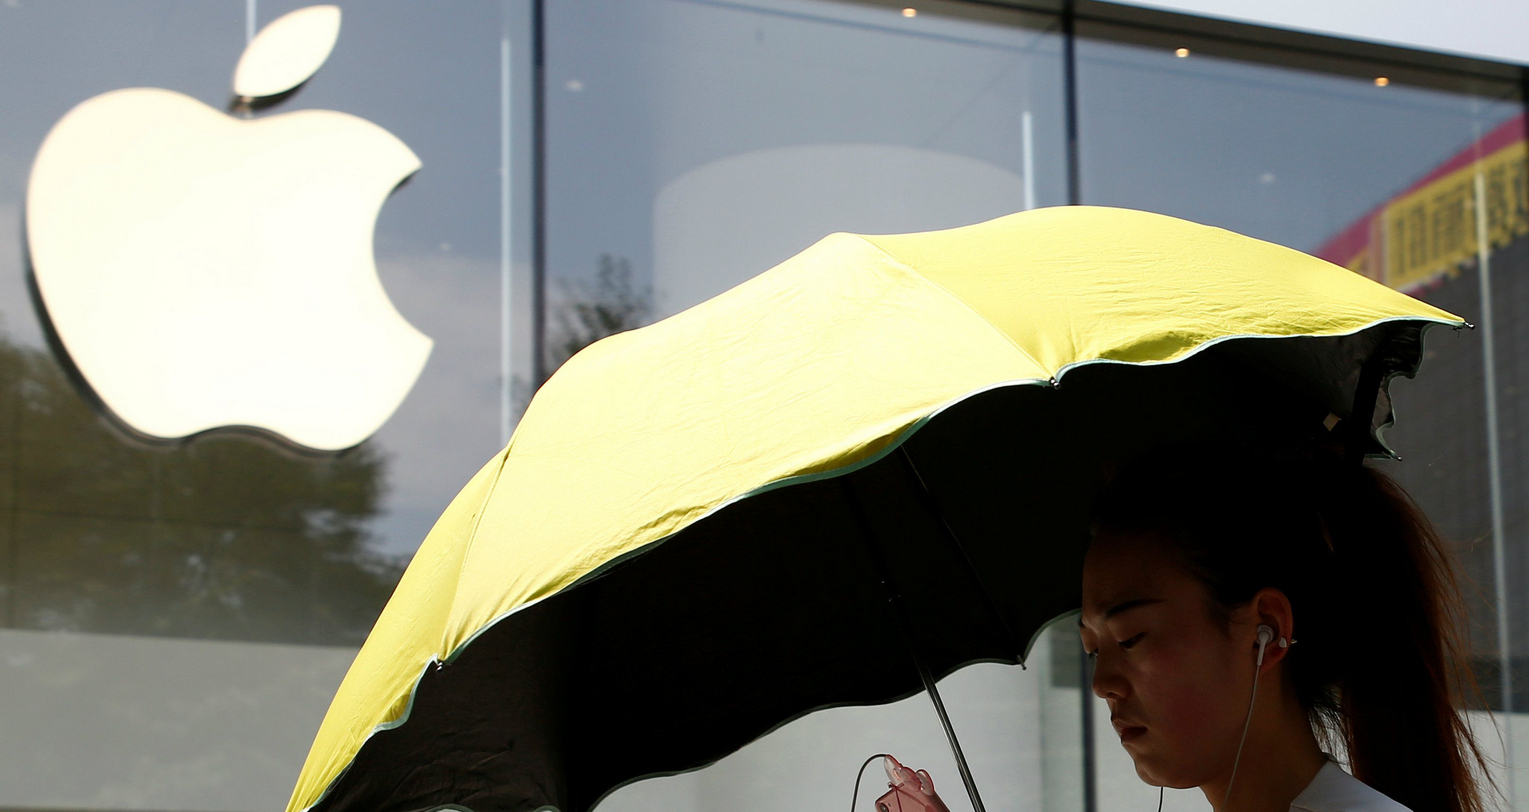 Az Apple rengeteg pénzt utal át Kínába